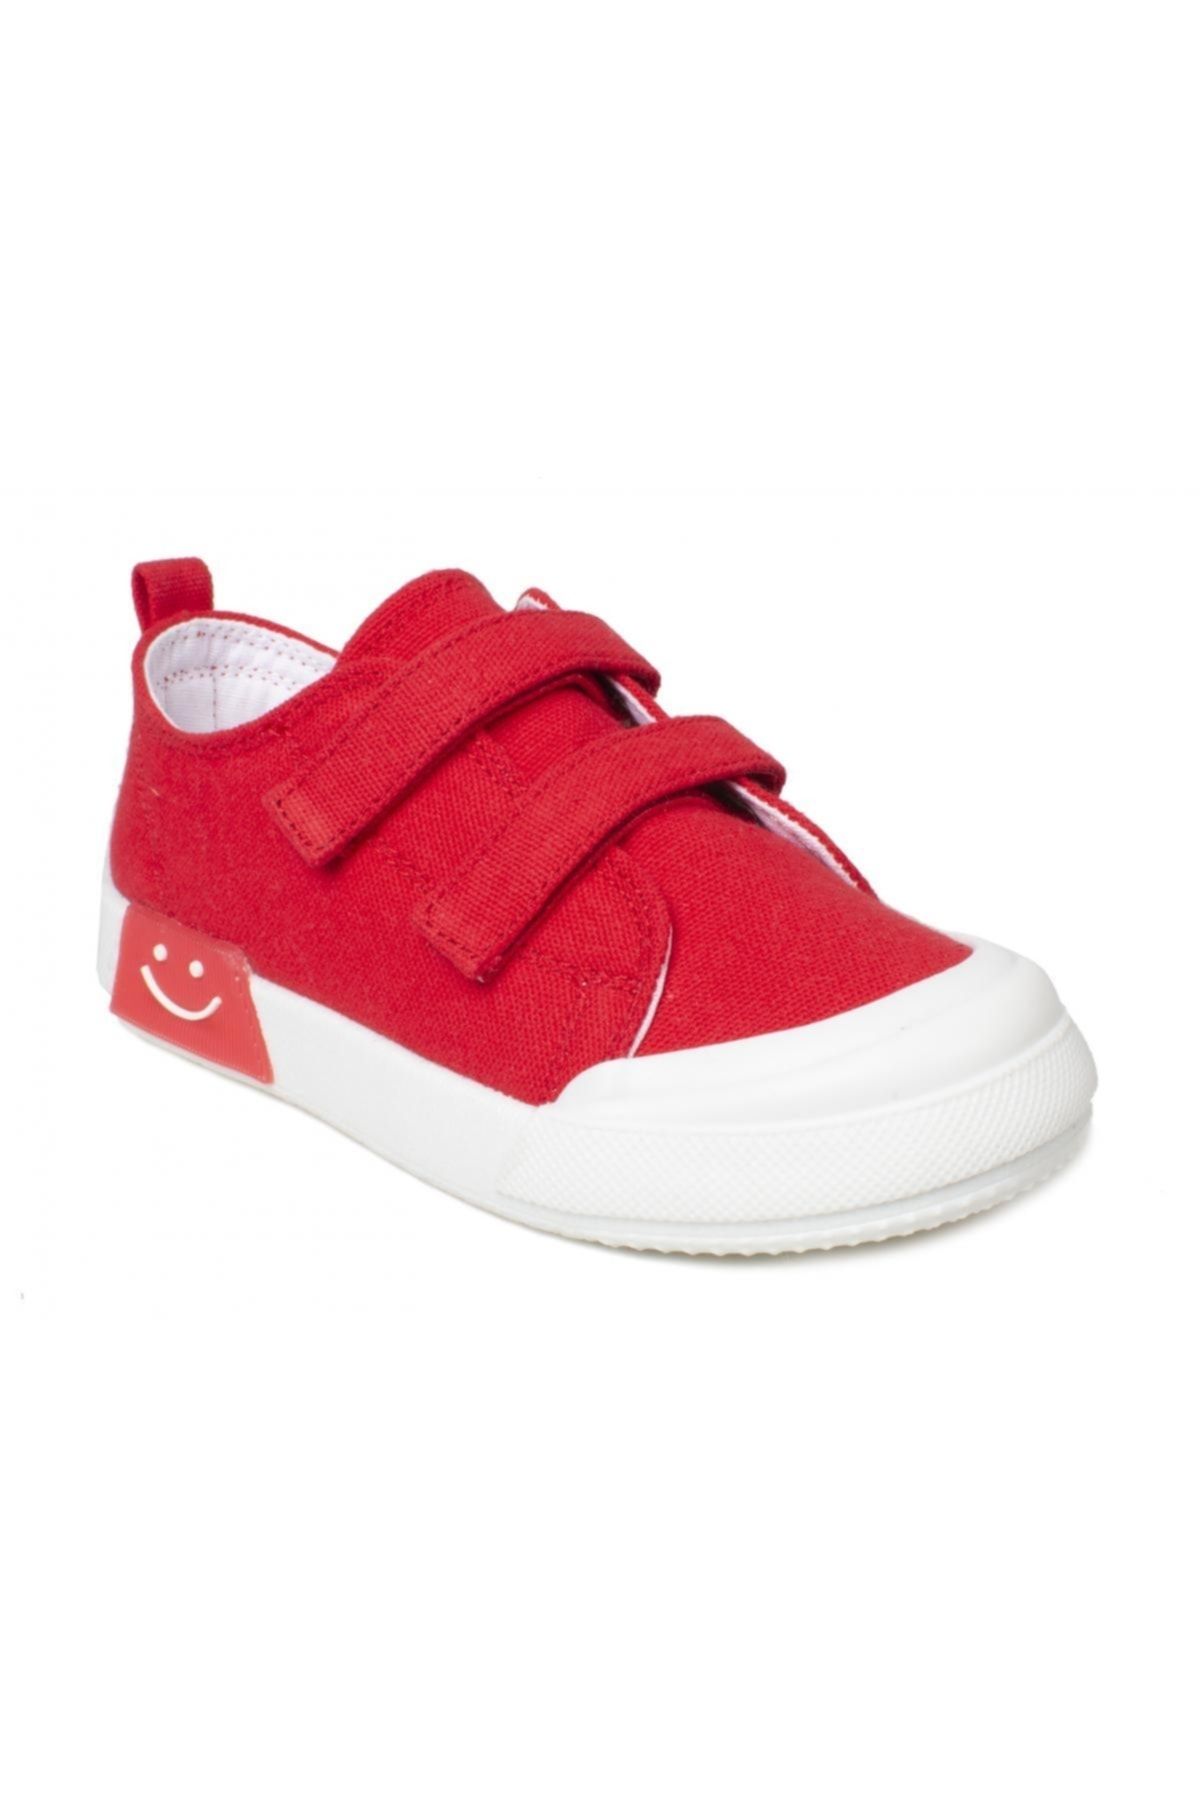 Vicco 925.p22y251 Luffy Patikketen Işıklı Kırmızı Çocuk Spor Ayakkabı